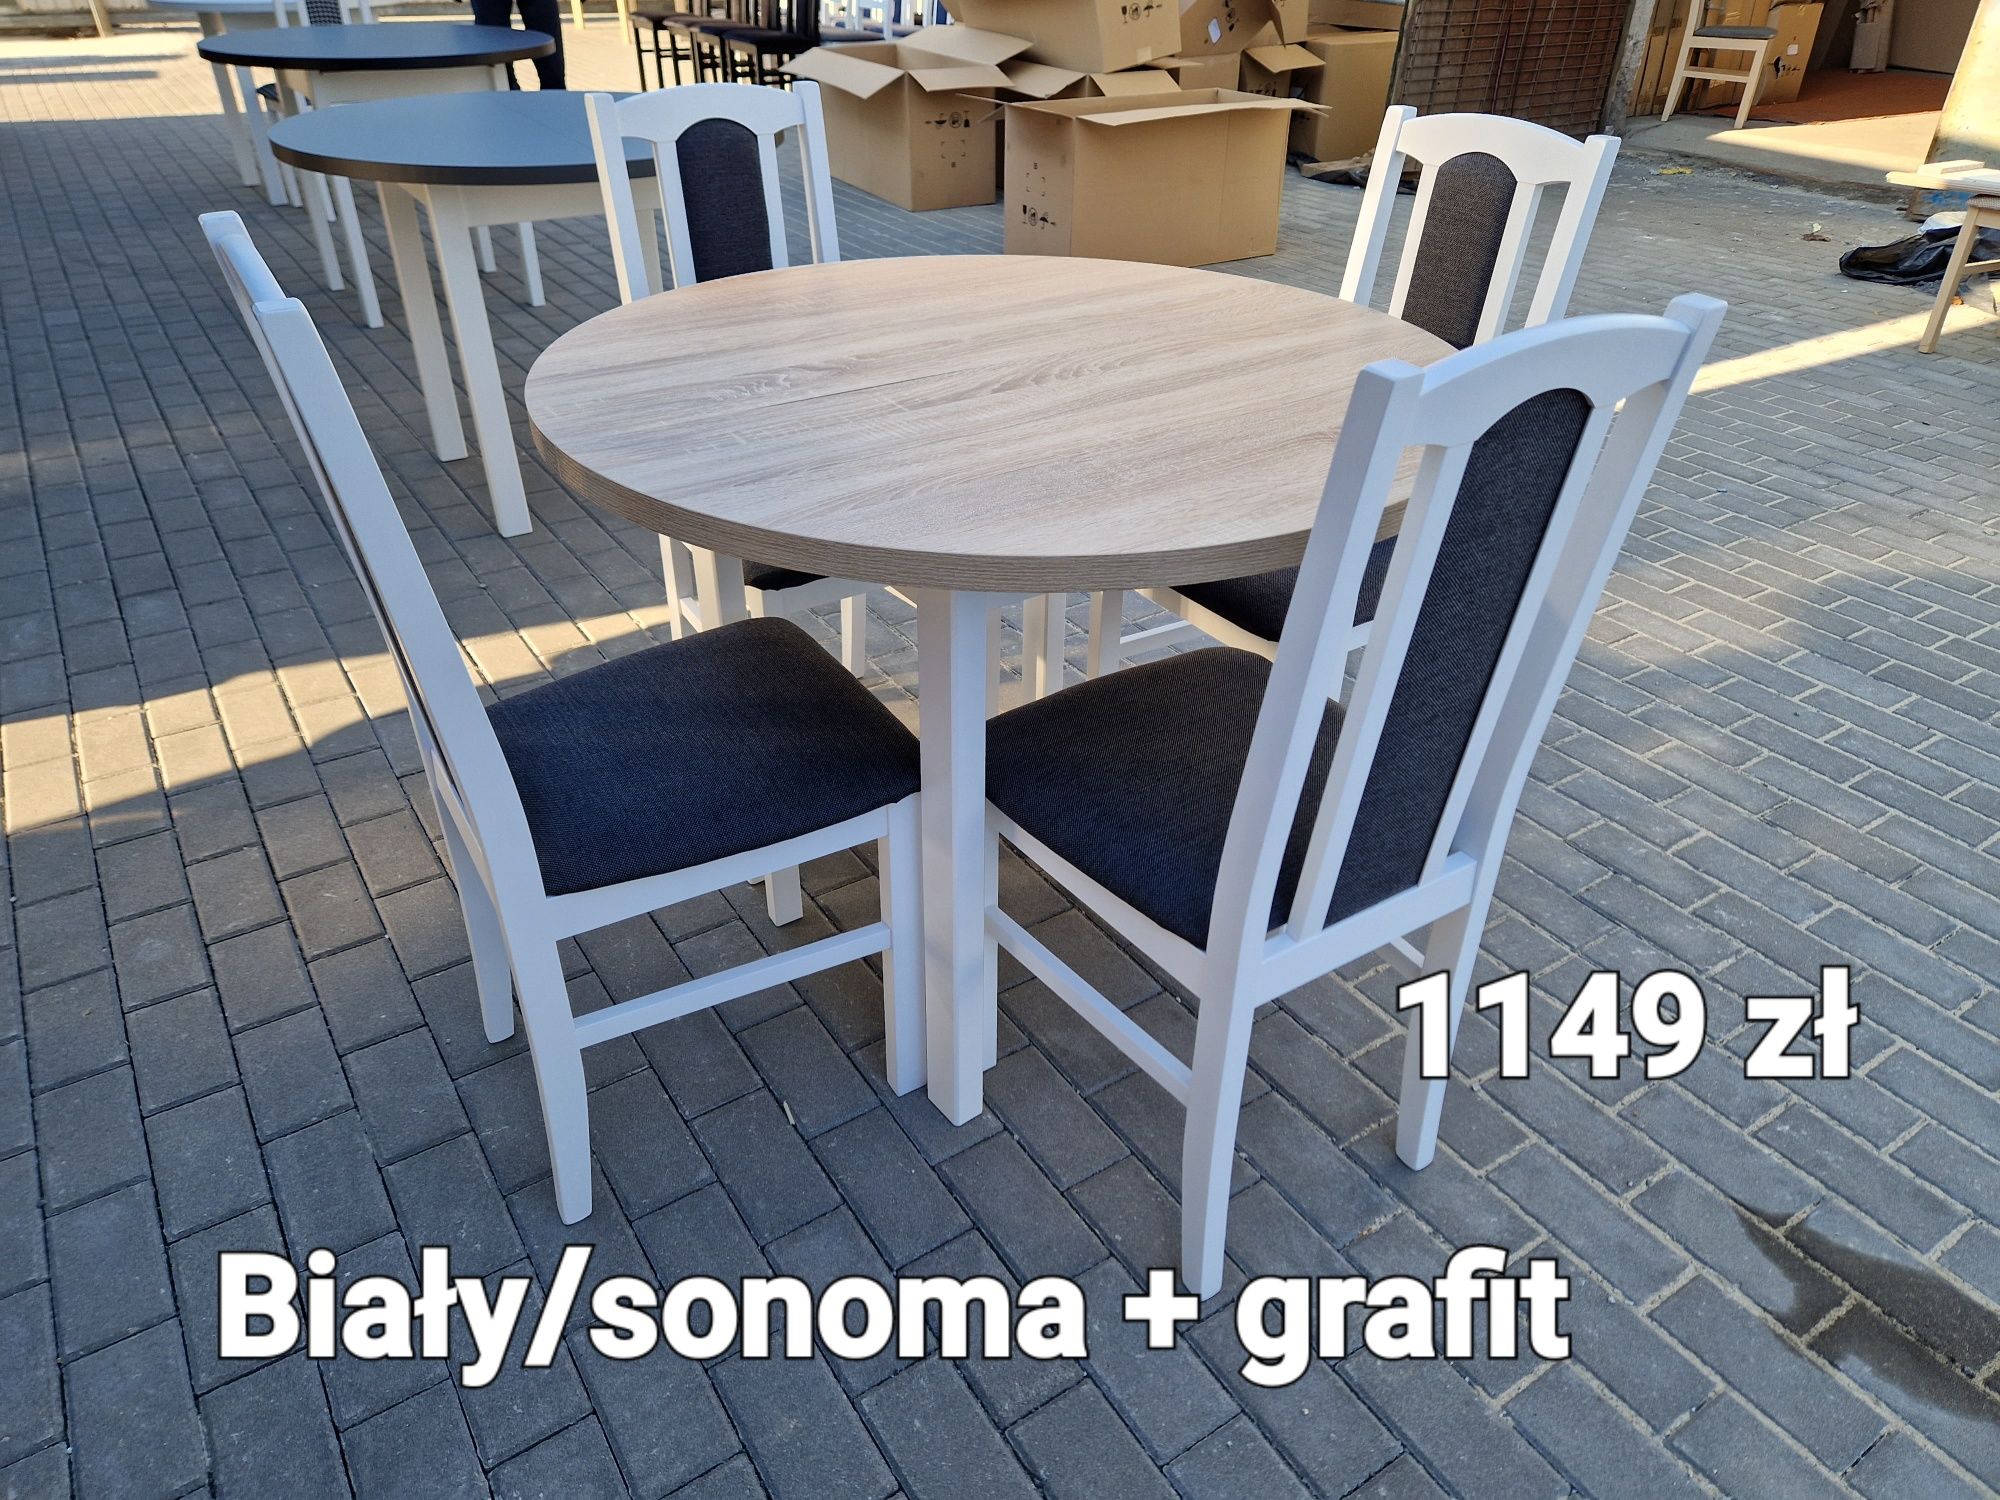 Nowe : Stół okrągły + 4 krzesła, biały/sonoma + grafit, dostawa PL